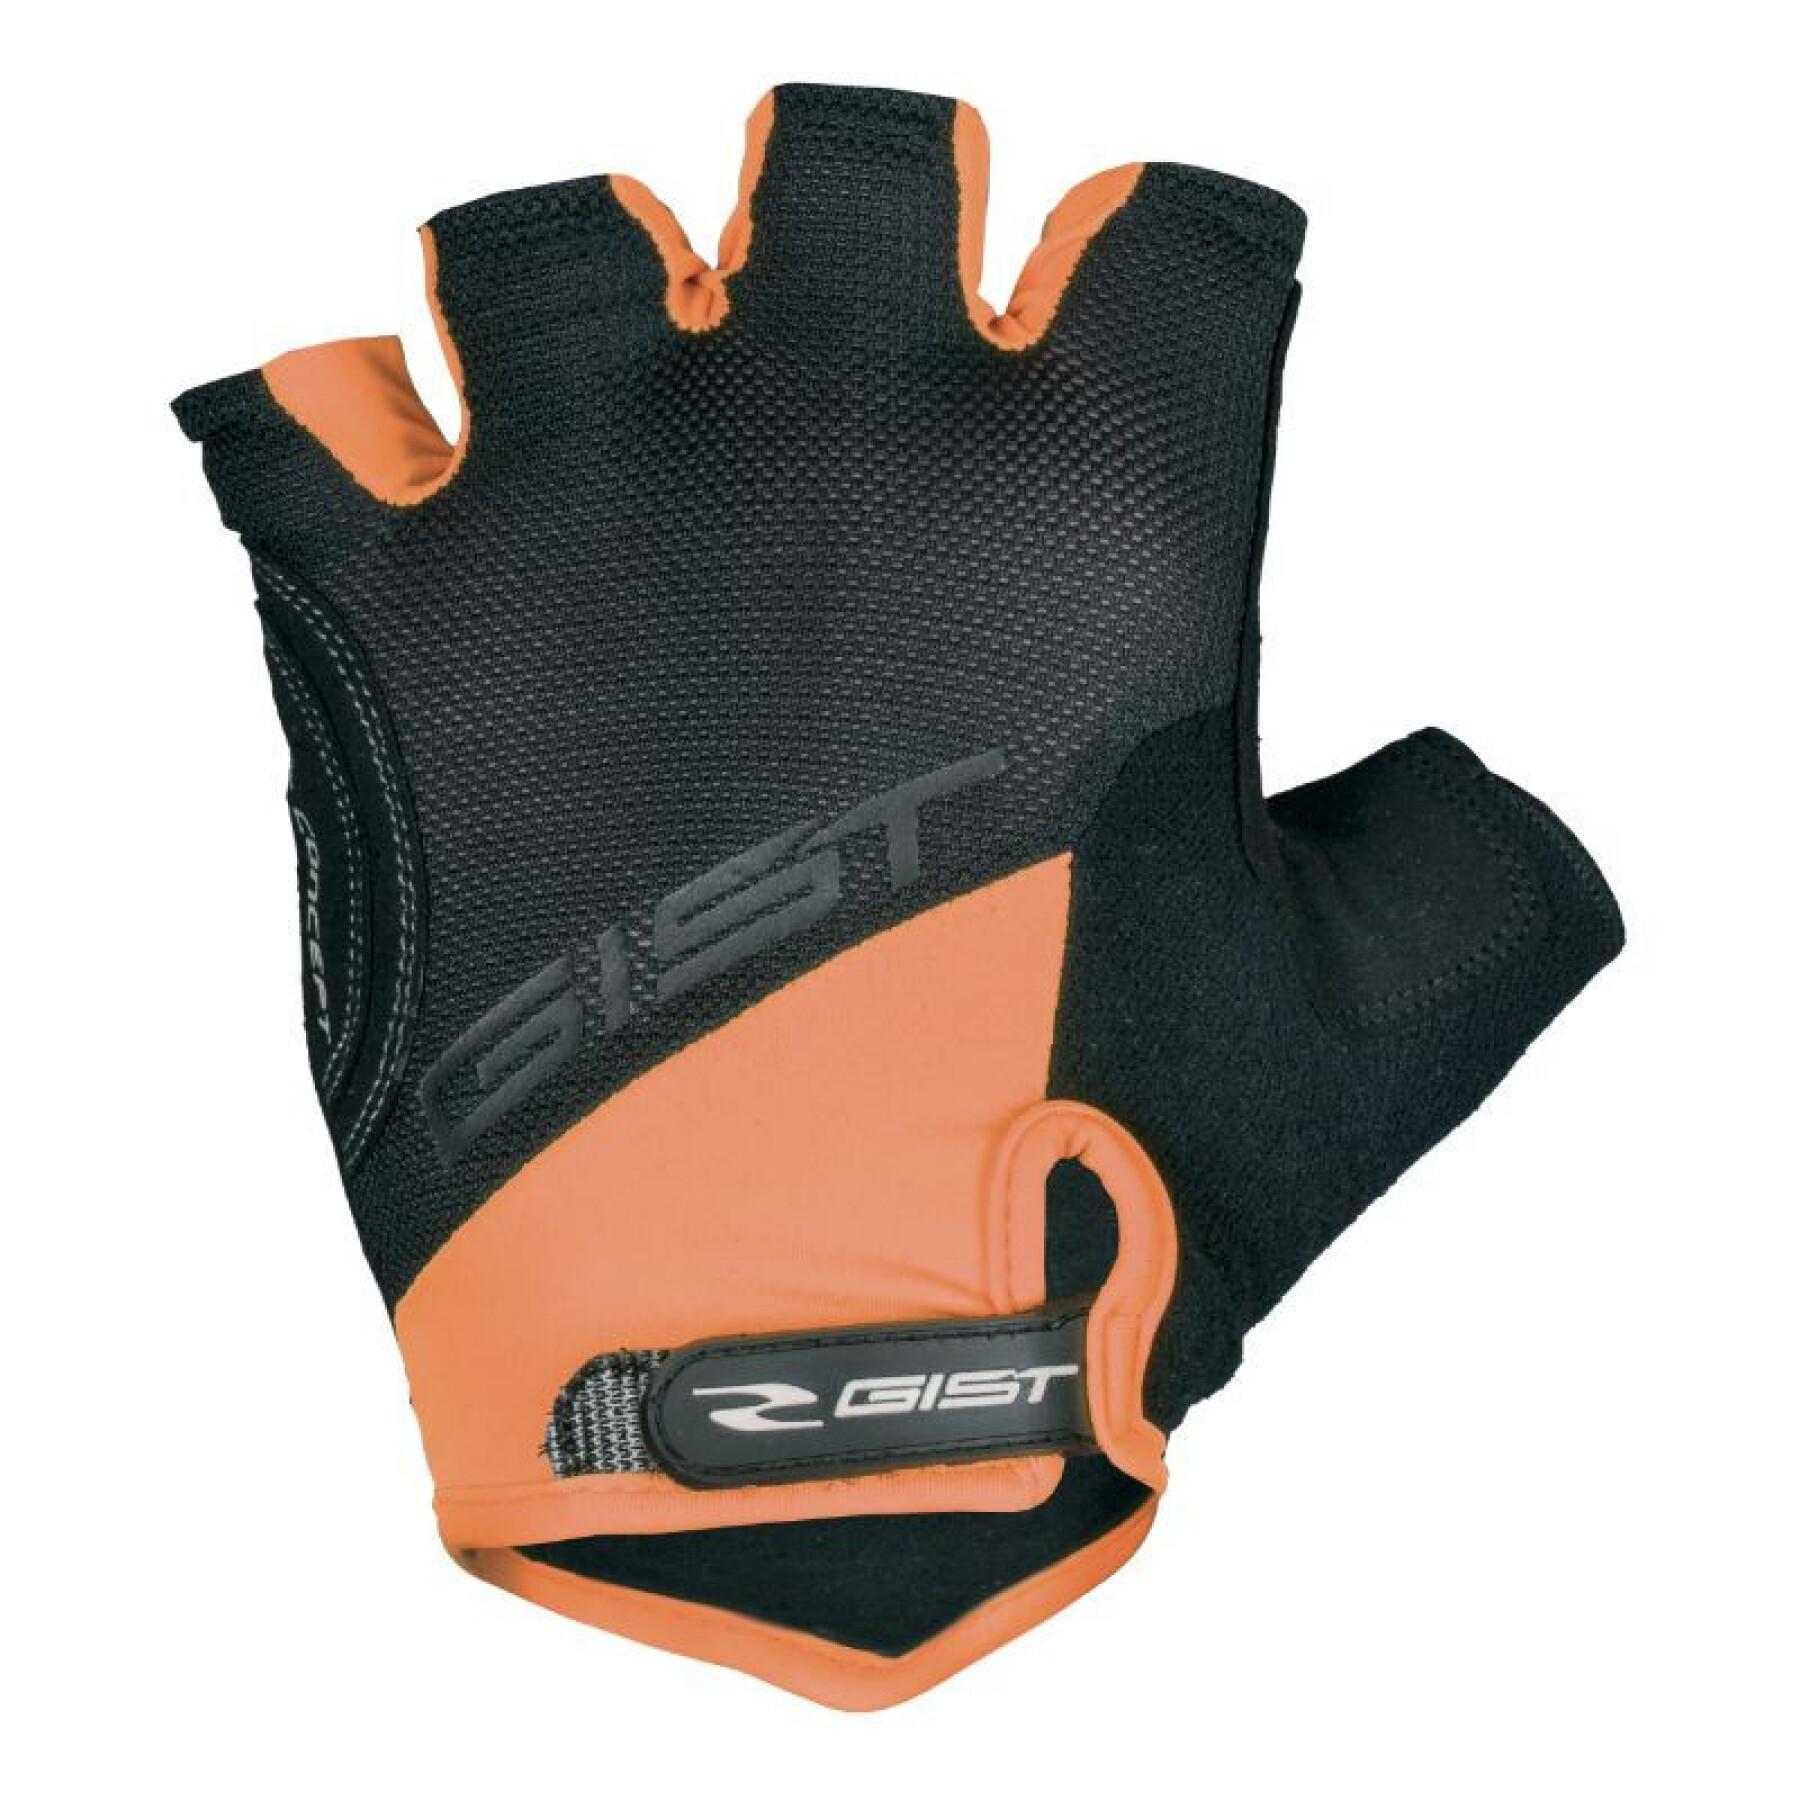 Korte handschoenen met klittenband Gist D-Grip Gel ete -5511